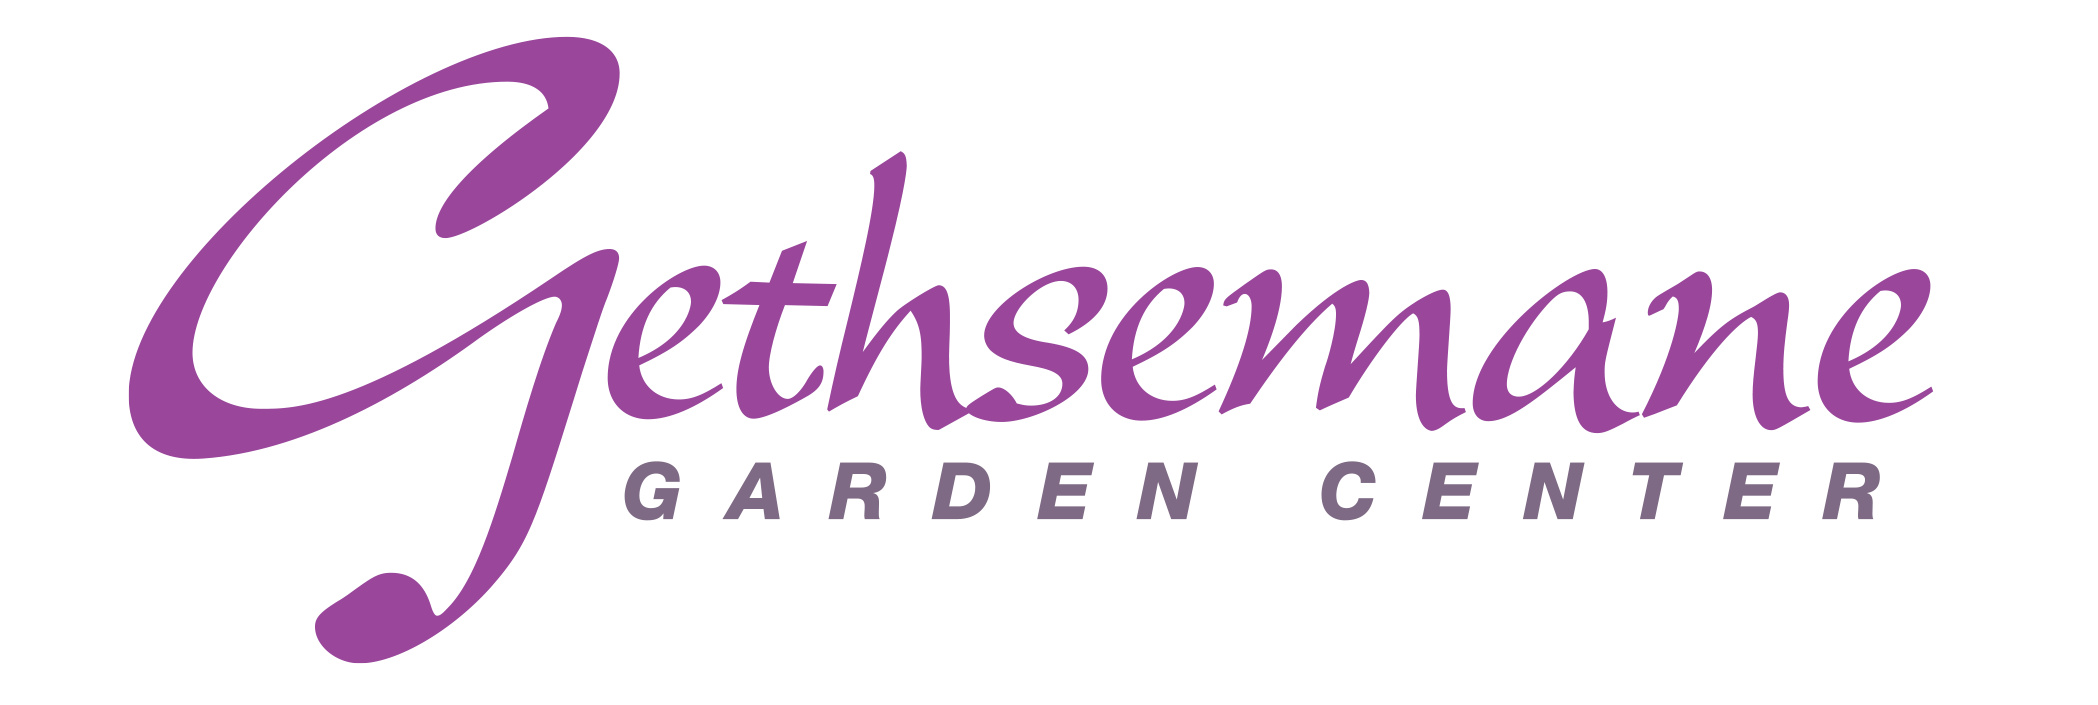 About Gethsemane Garden Center